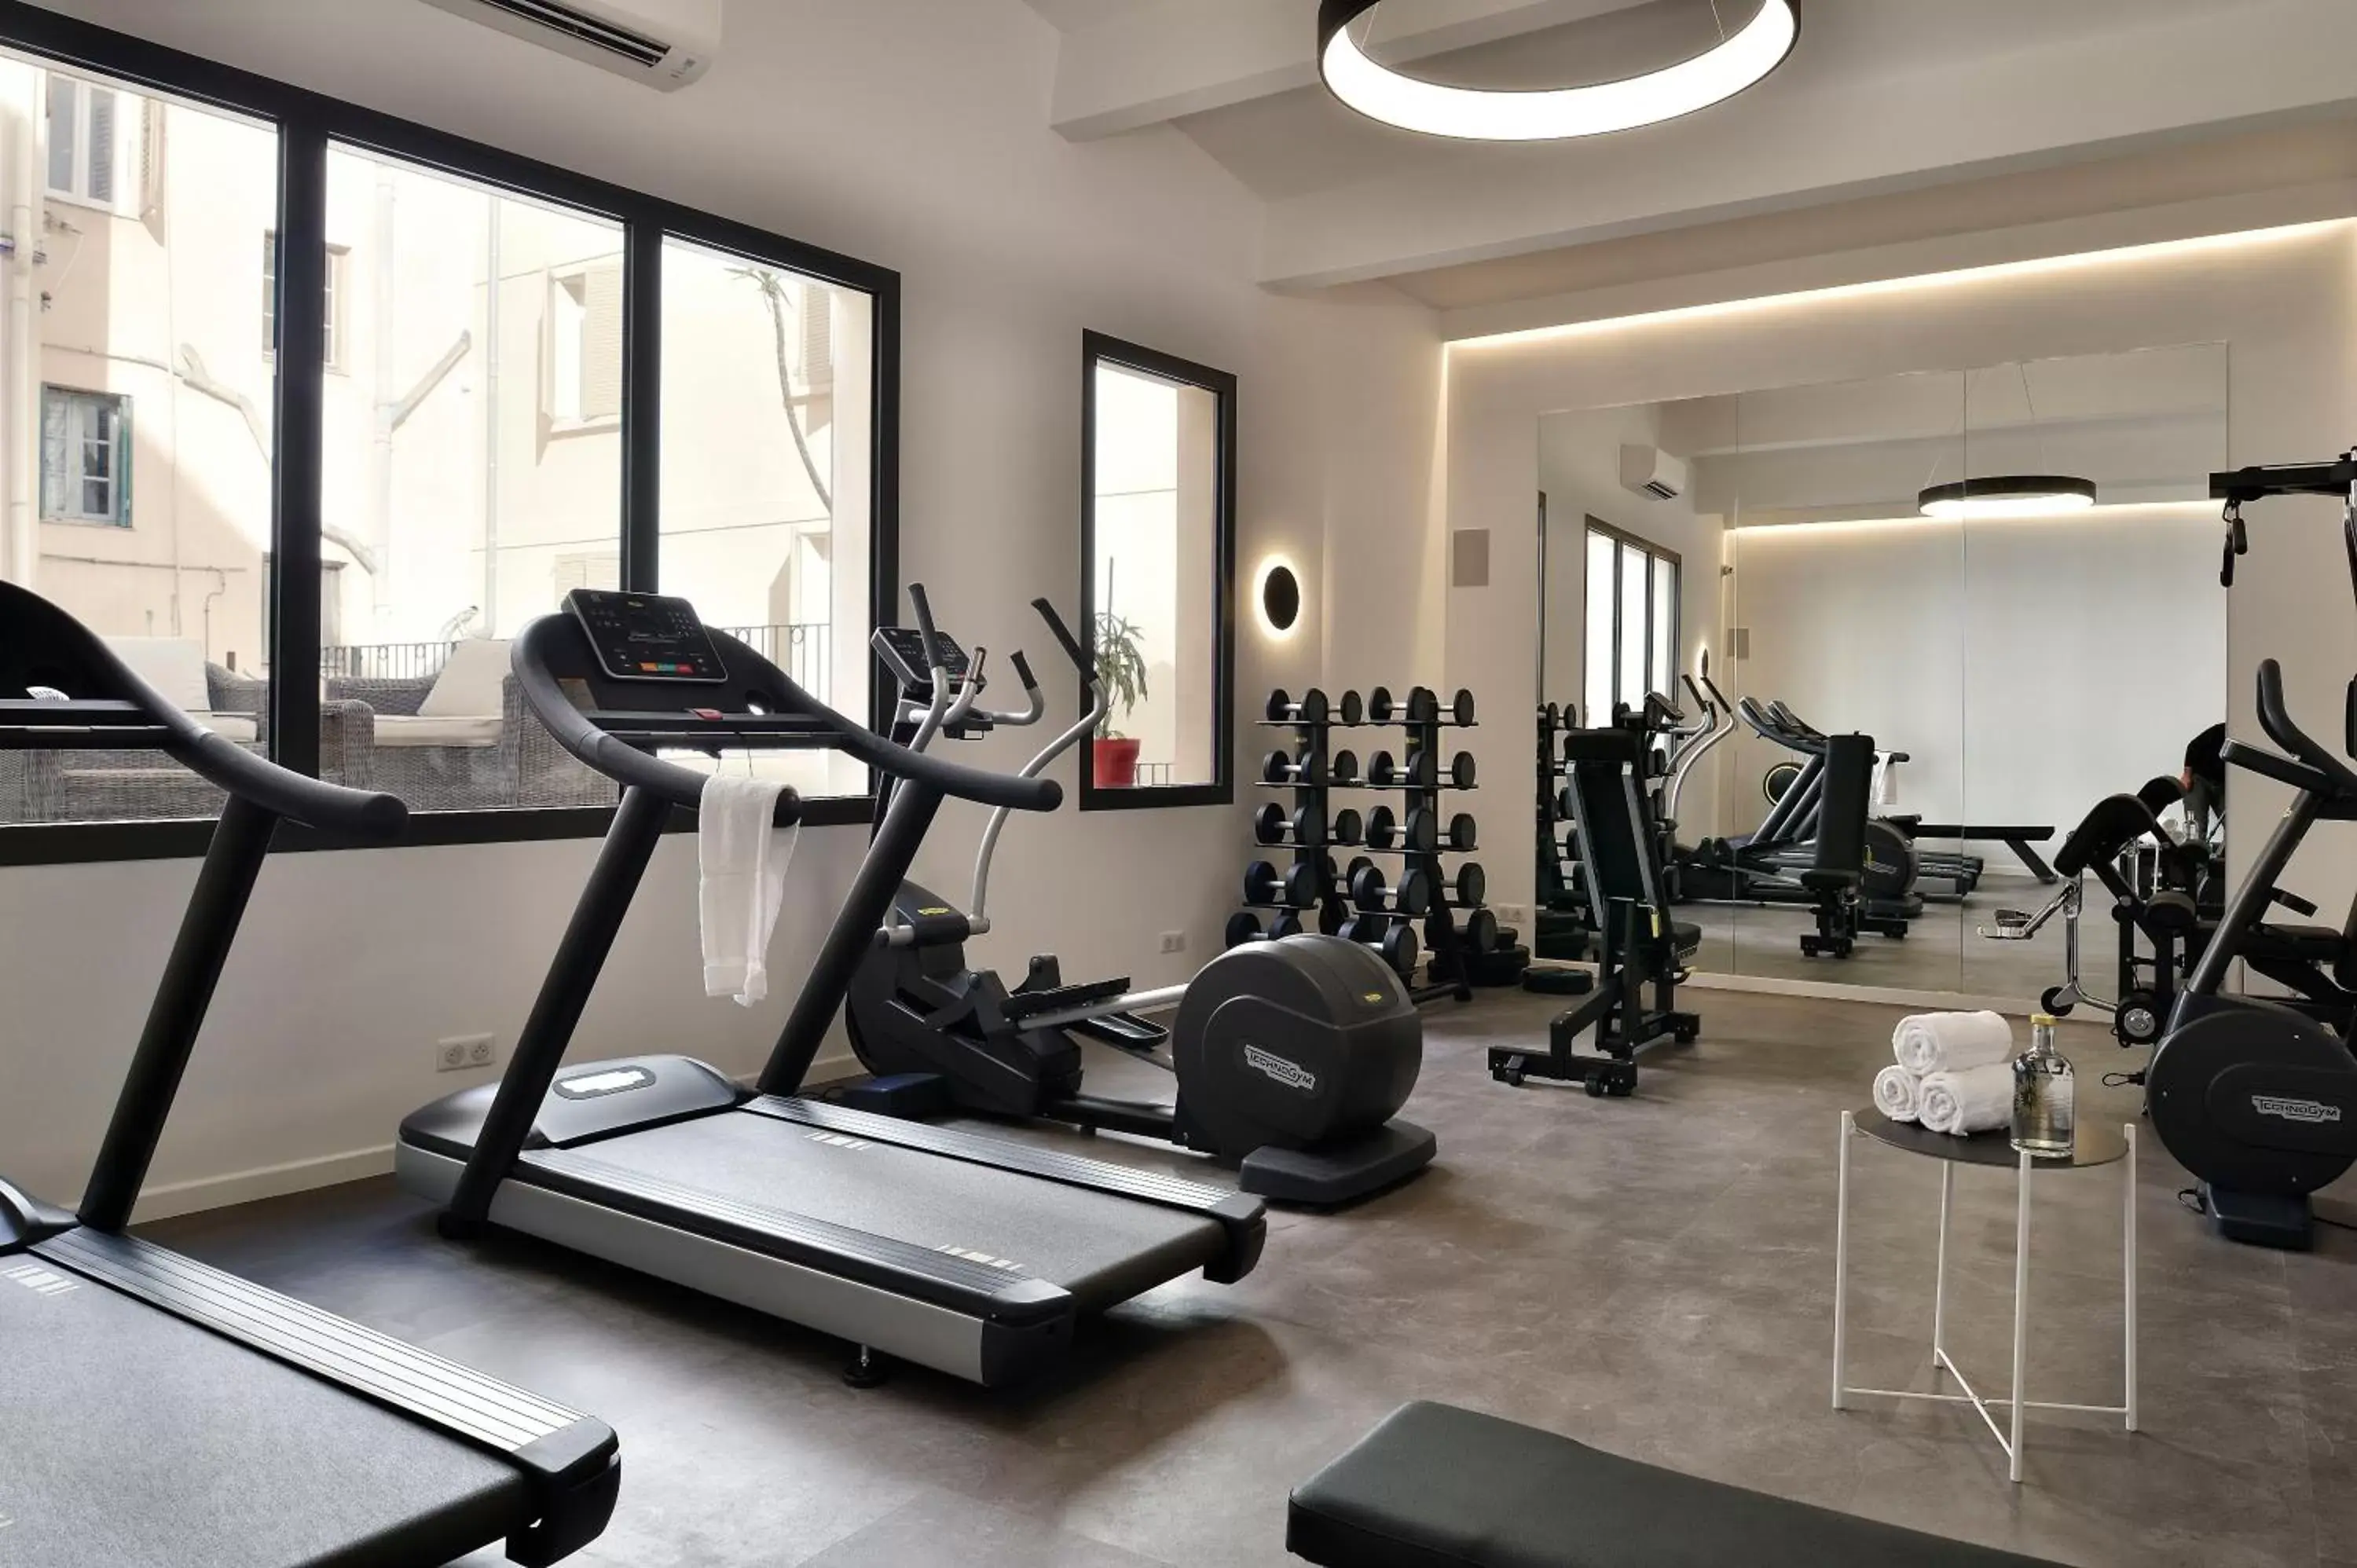 Fitness centre/facilities, Fitness Center/Facilities in Hôtel Fesch & Spa